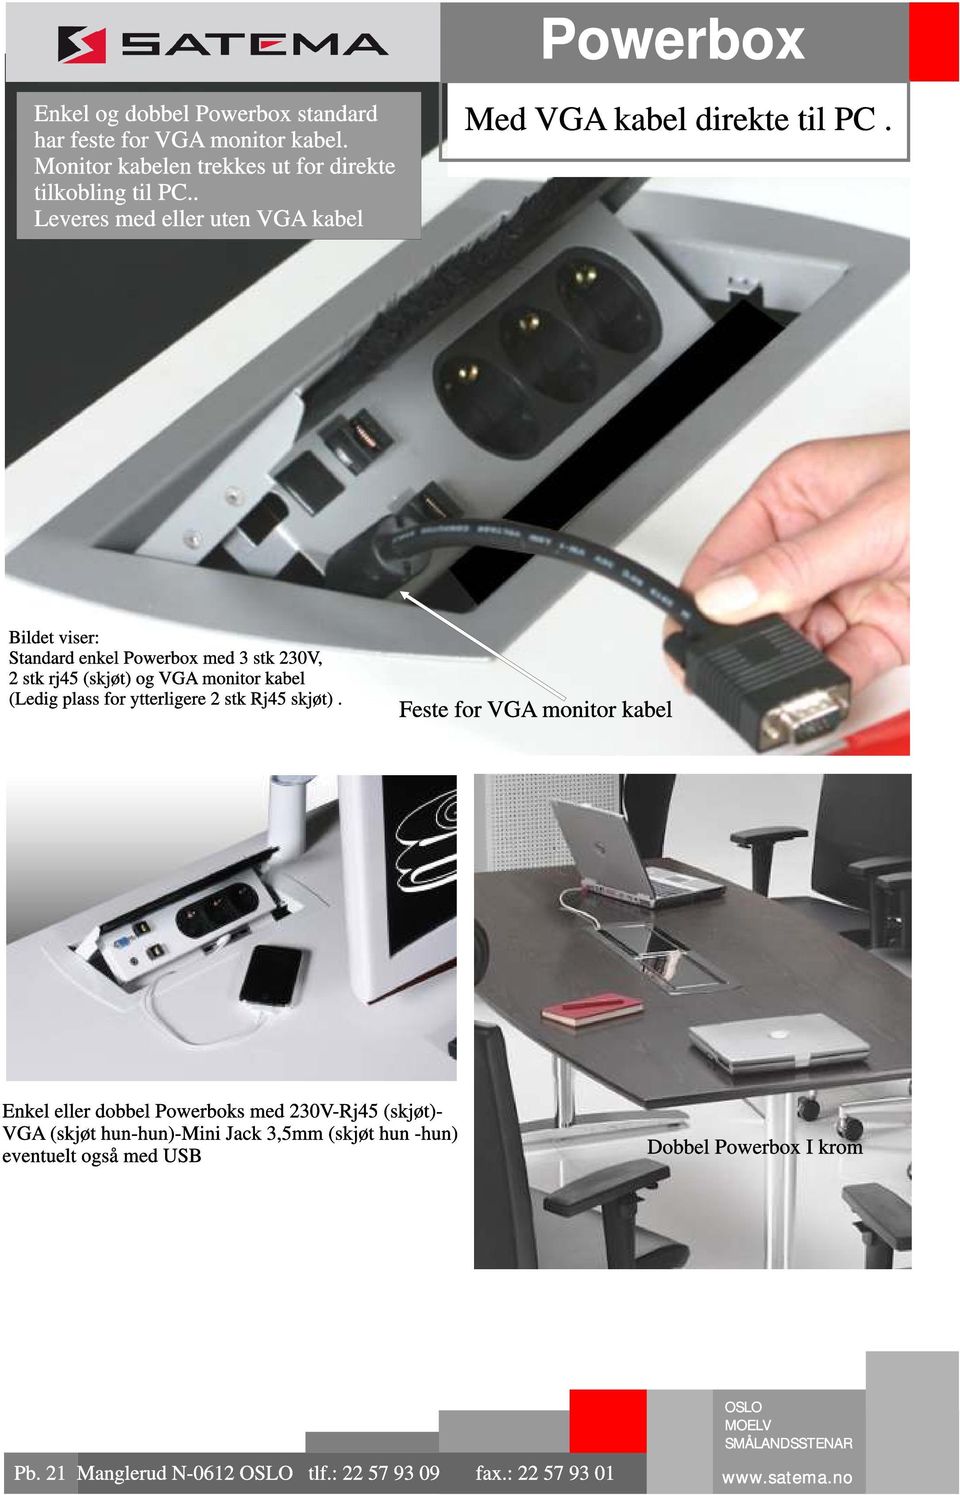 Bildet viser: Standard enkel Powerbox med 3 stk 230V, 2 stk rj45 (skjøt) og VGA monitor kabel (Ledig plass for ytterligere 2 stk Rj45 skjøt).